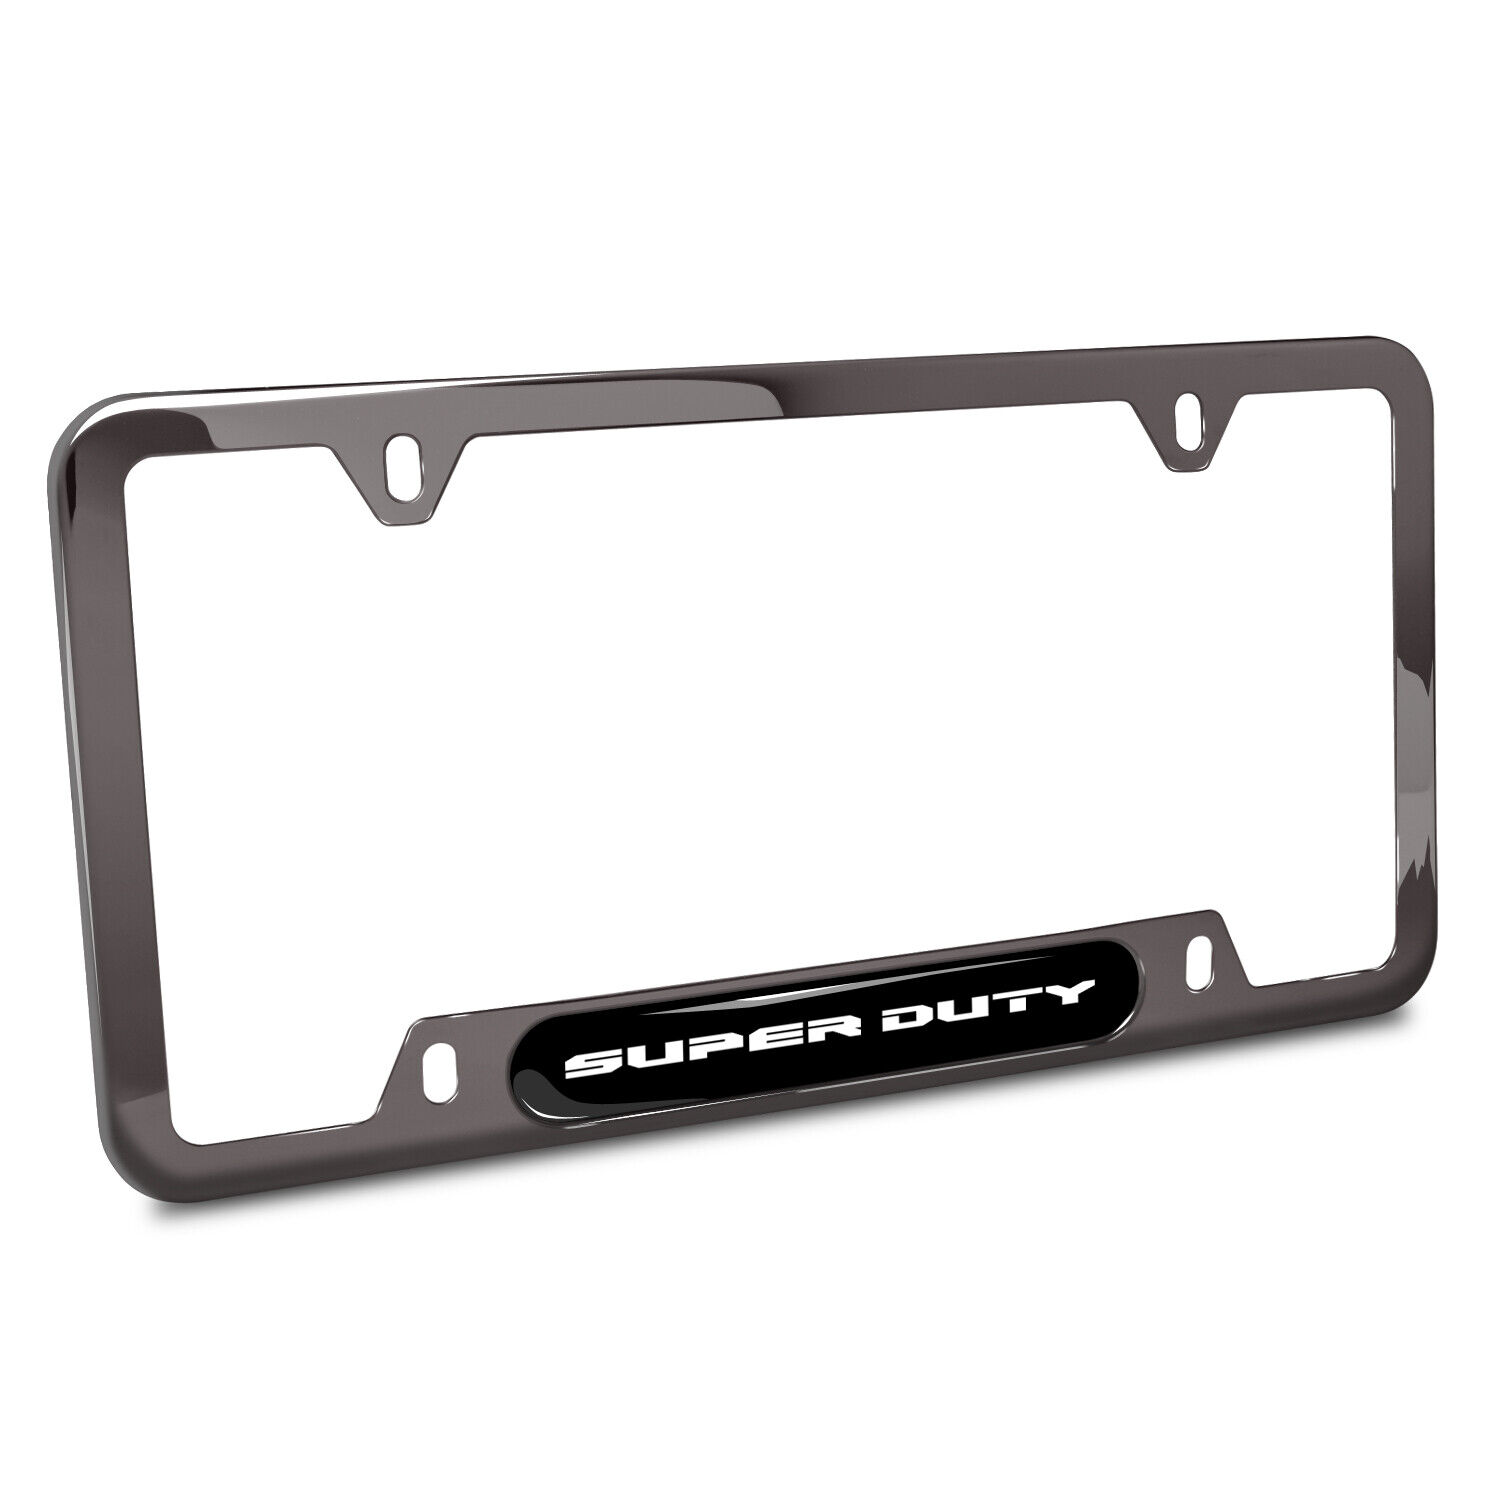 Ford Super-Duty Black Insert Gunmetal Chrome Stainless Steel License Plate Frame